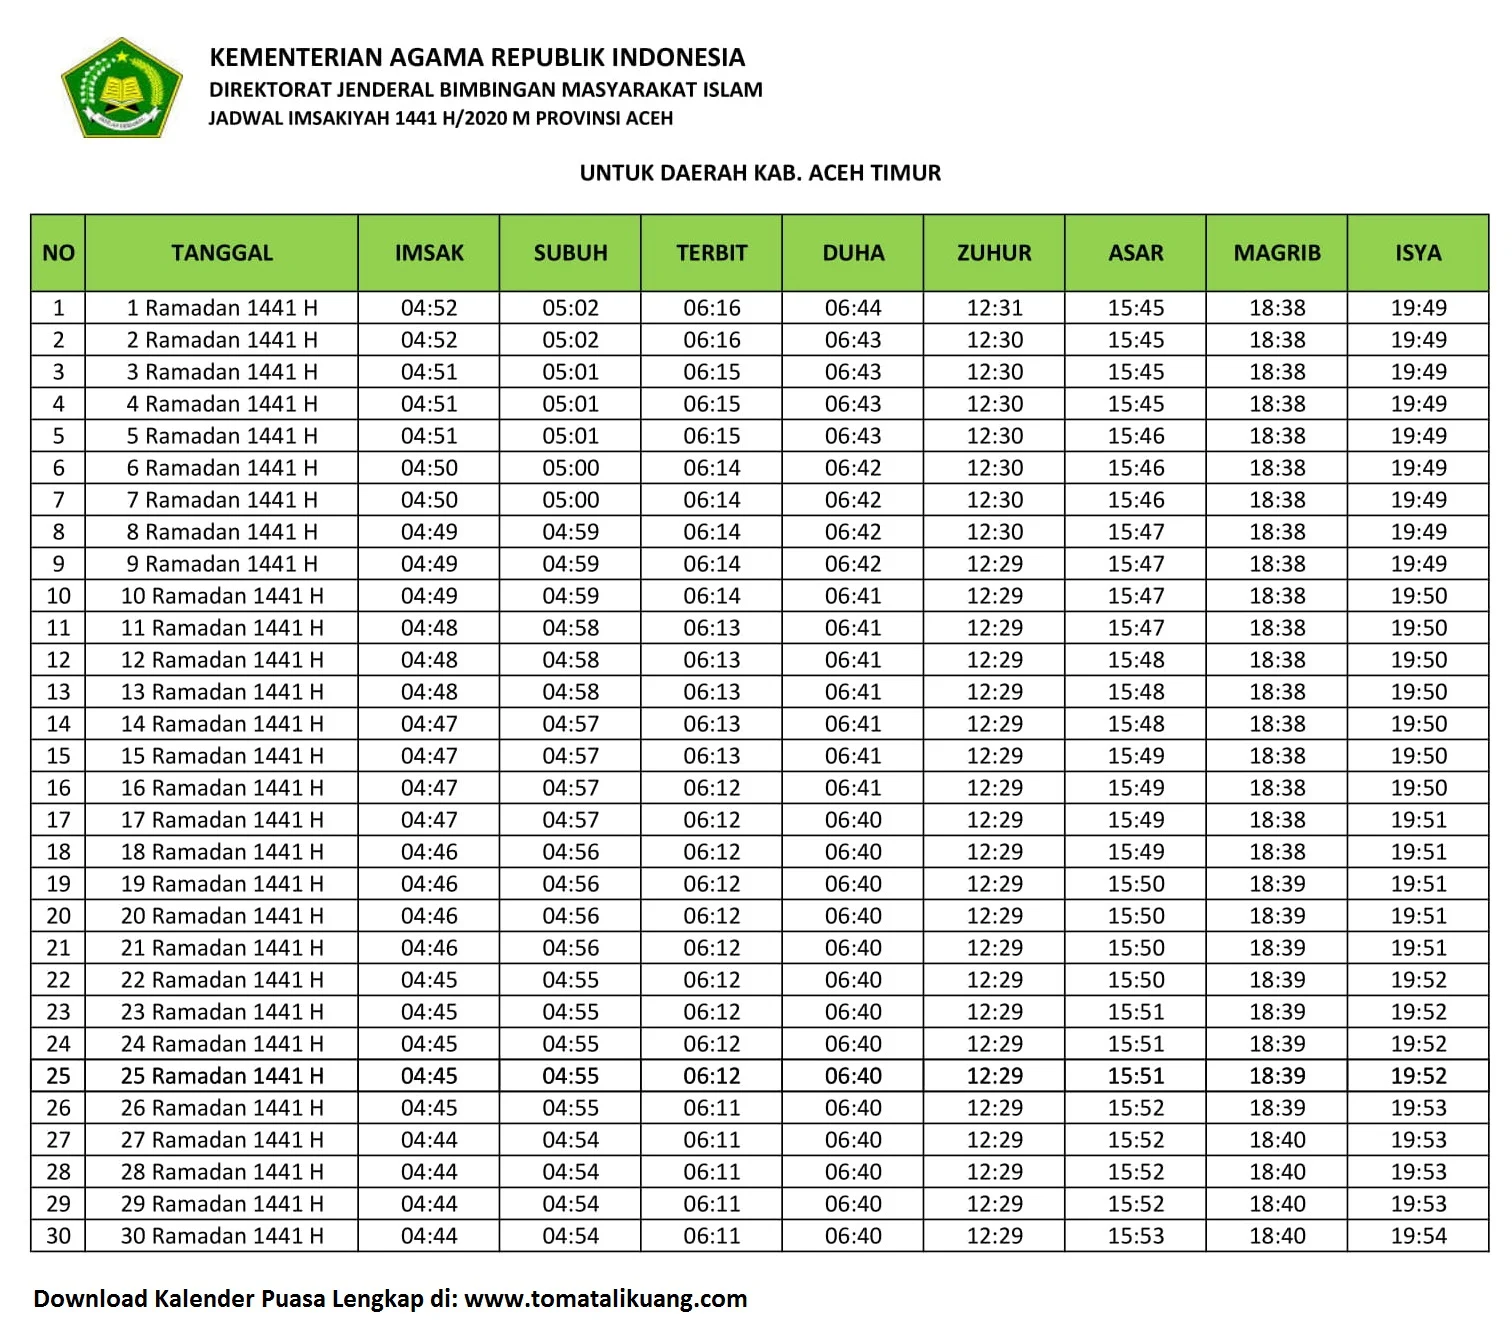 Jadwal Imsakiyah & Buka Puasa Kab. Aceh Timur 2020 / 1441 H